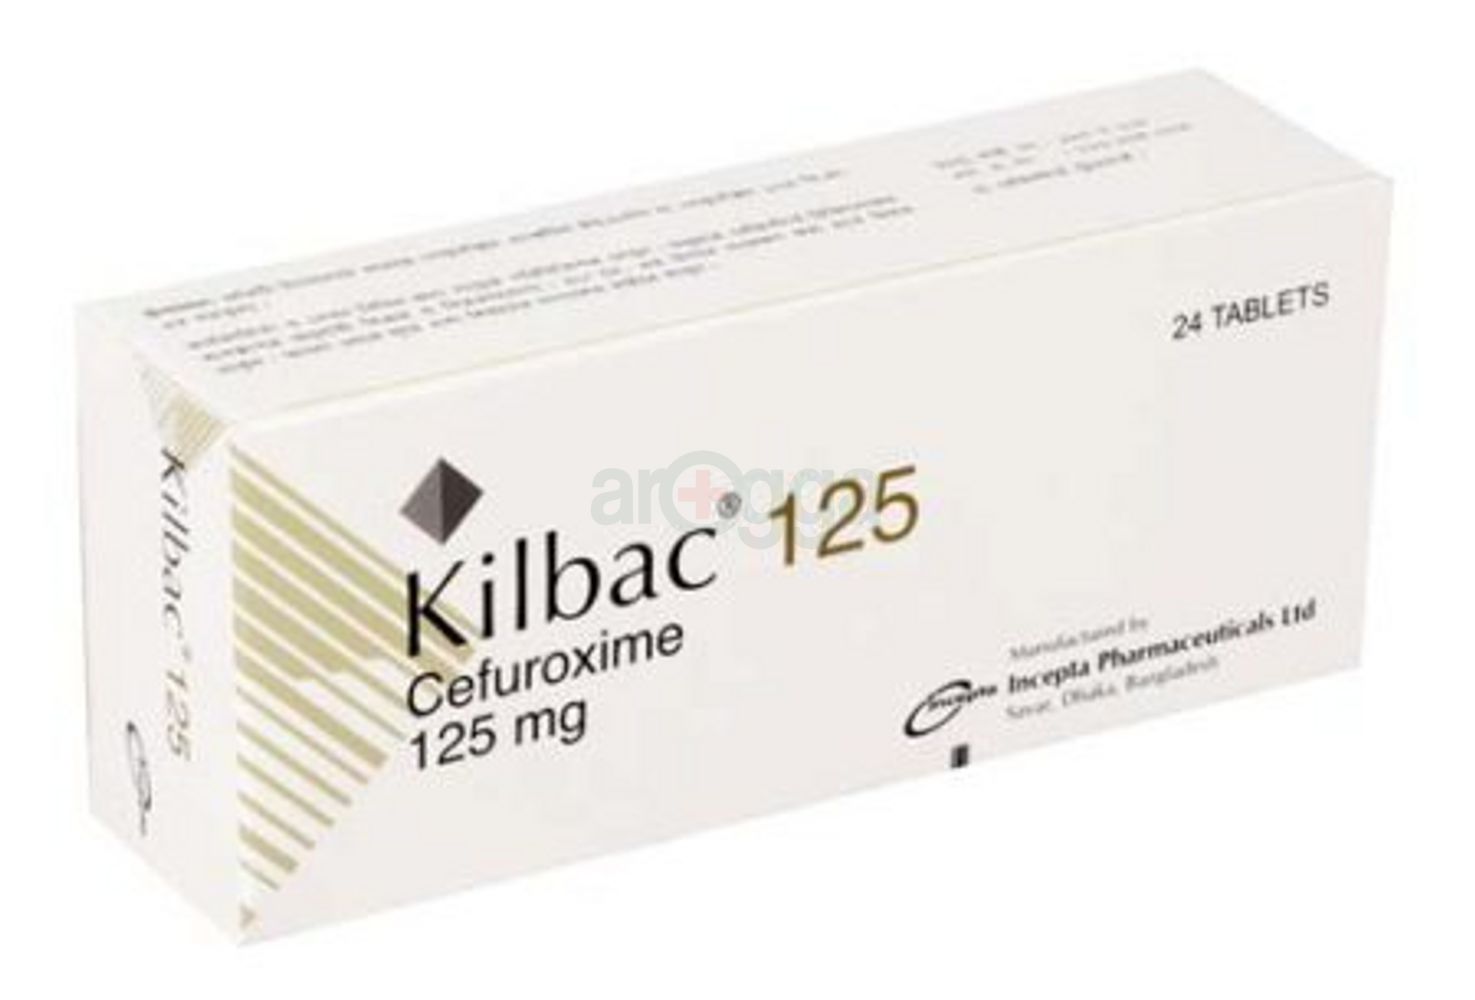 Kilbac 125